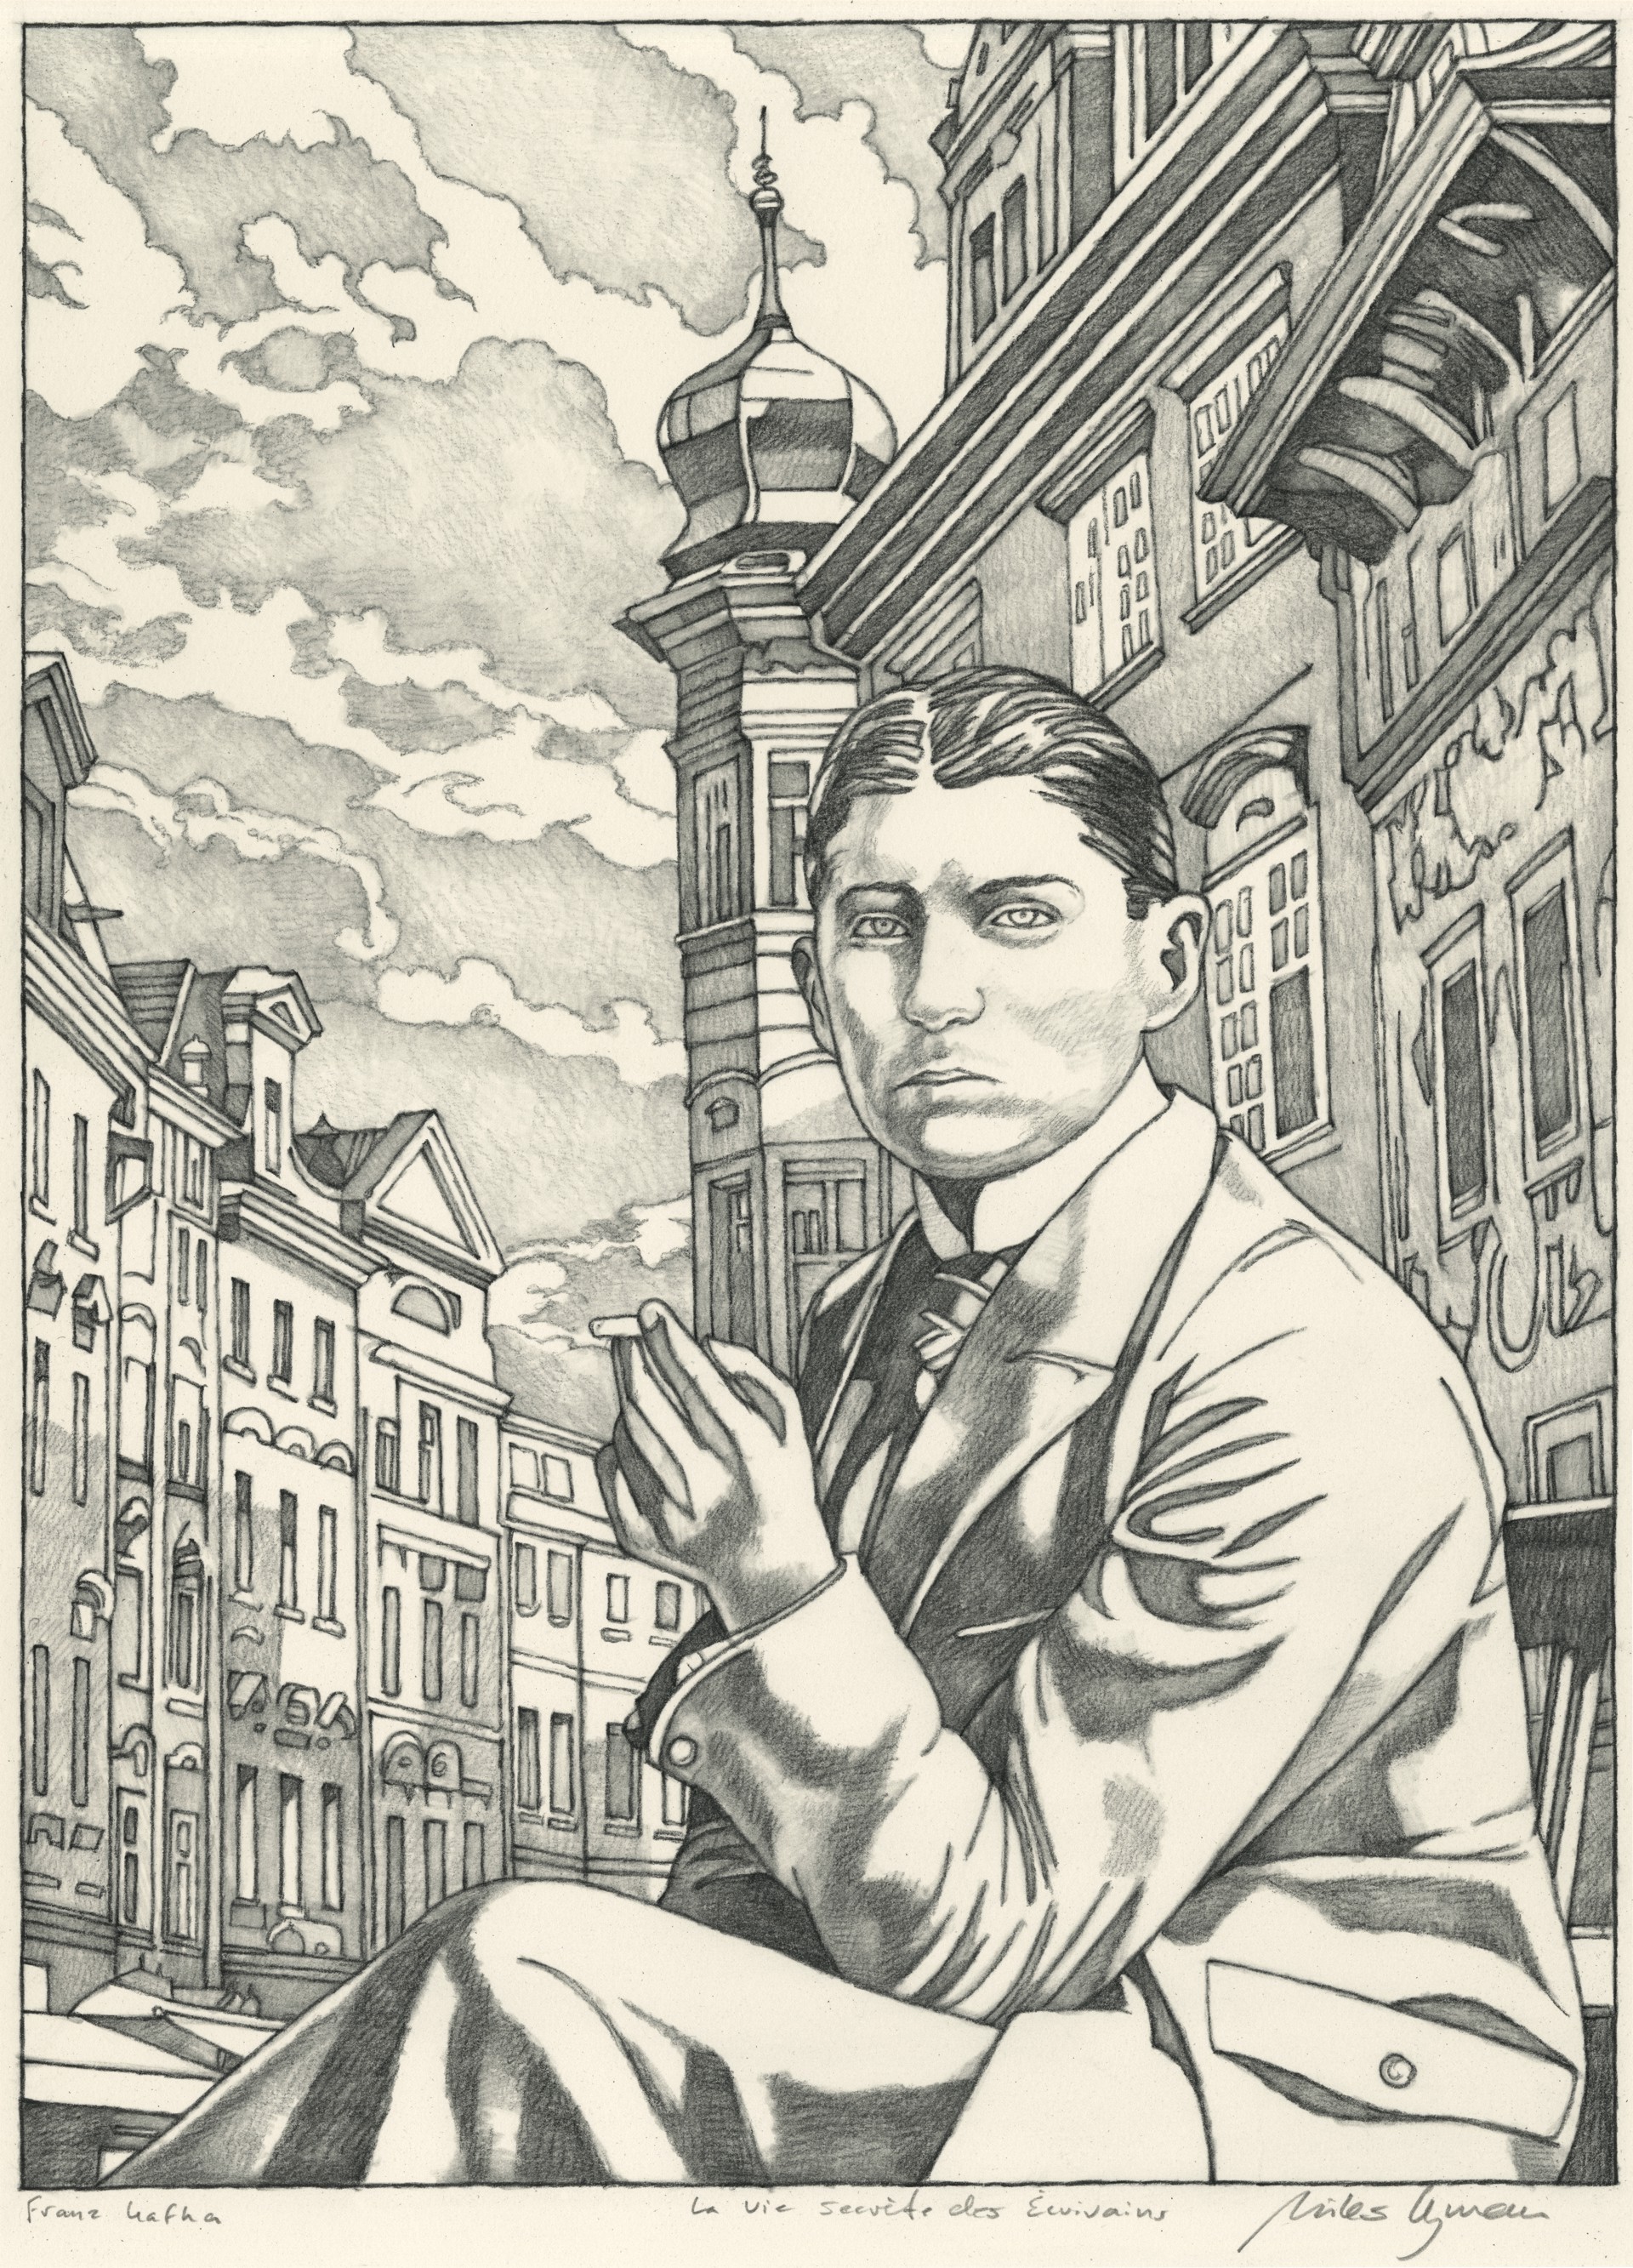 La Vie Secrète des Ecrivains, “Franz Kafka” by Miles Hyman